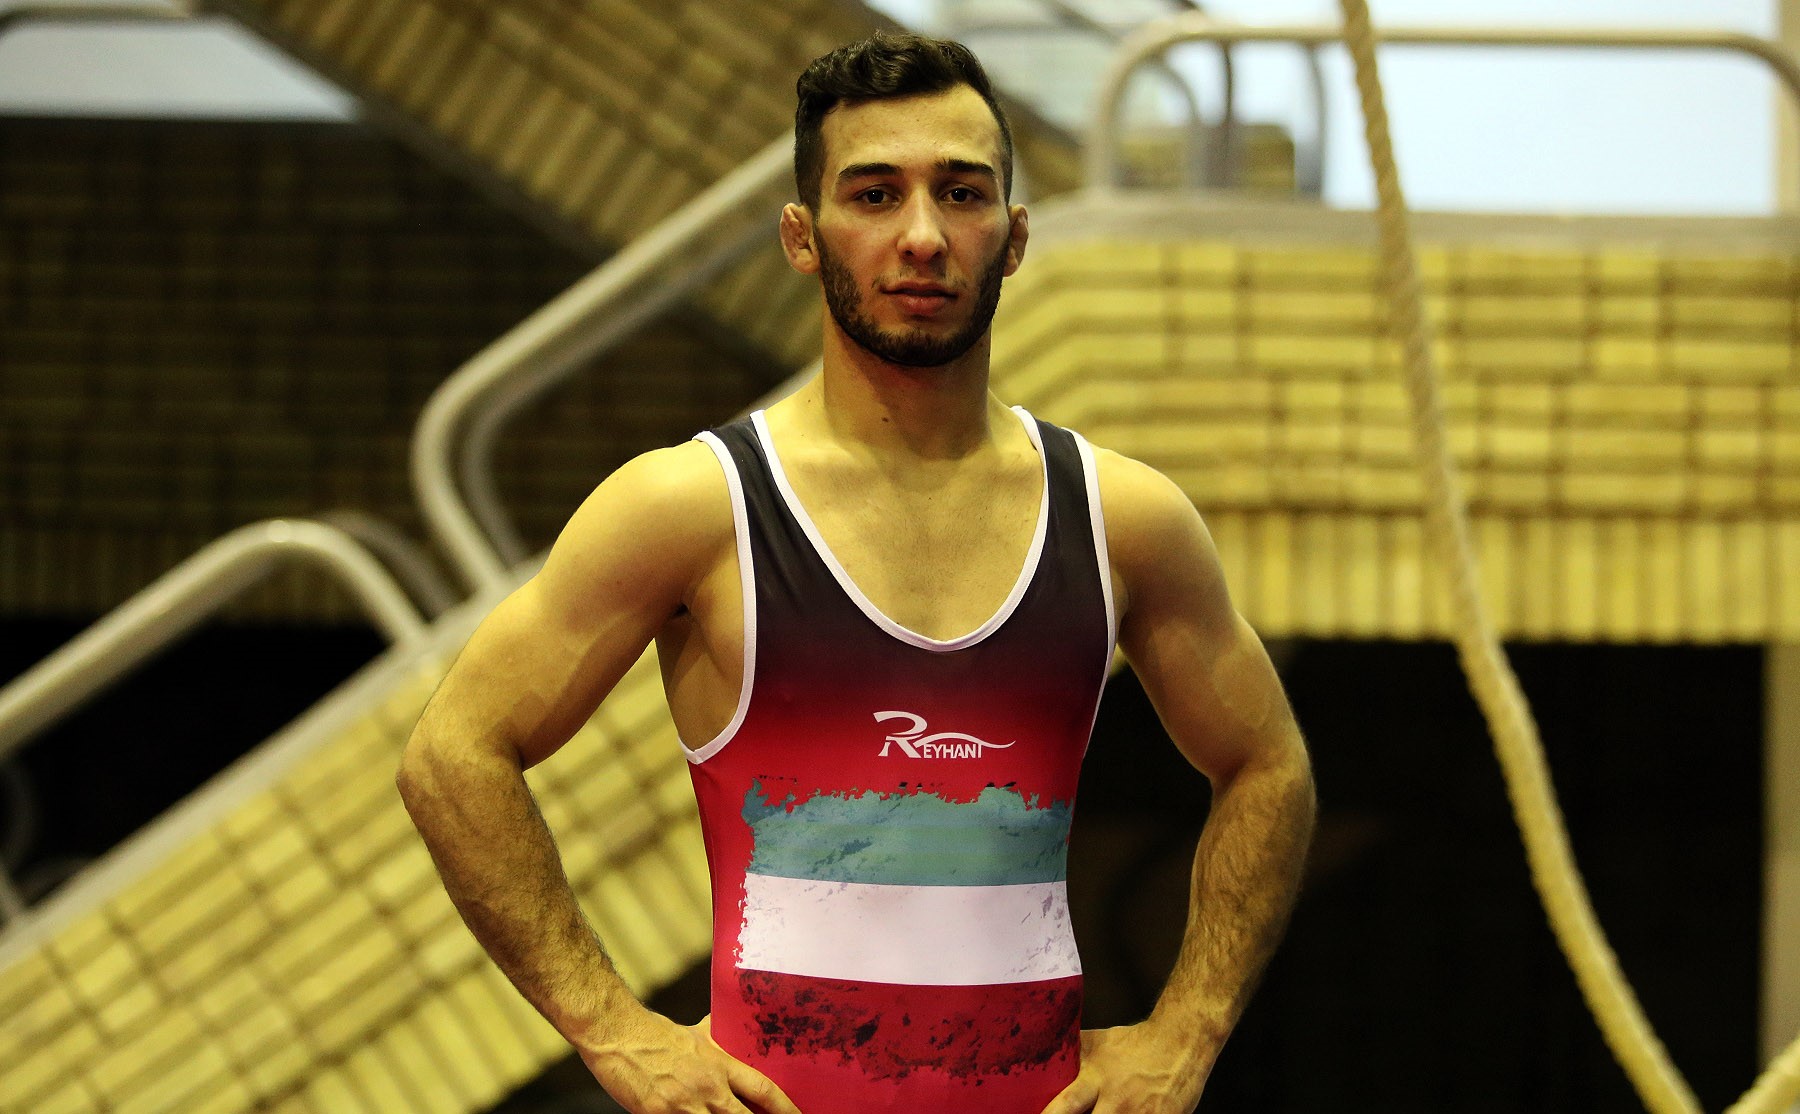 کشتی فرنگی-تیم ملی کشتی فرنگی-کشتی فرنگی قهرمانی آسیا-wrestling-iran wrestling team